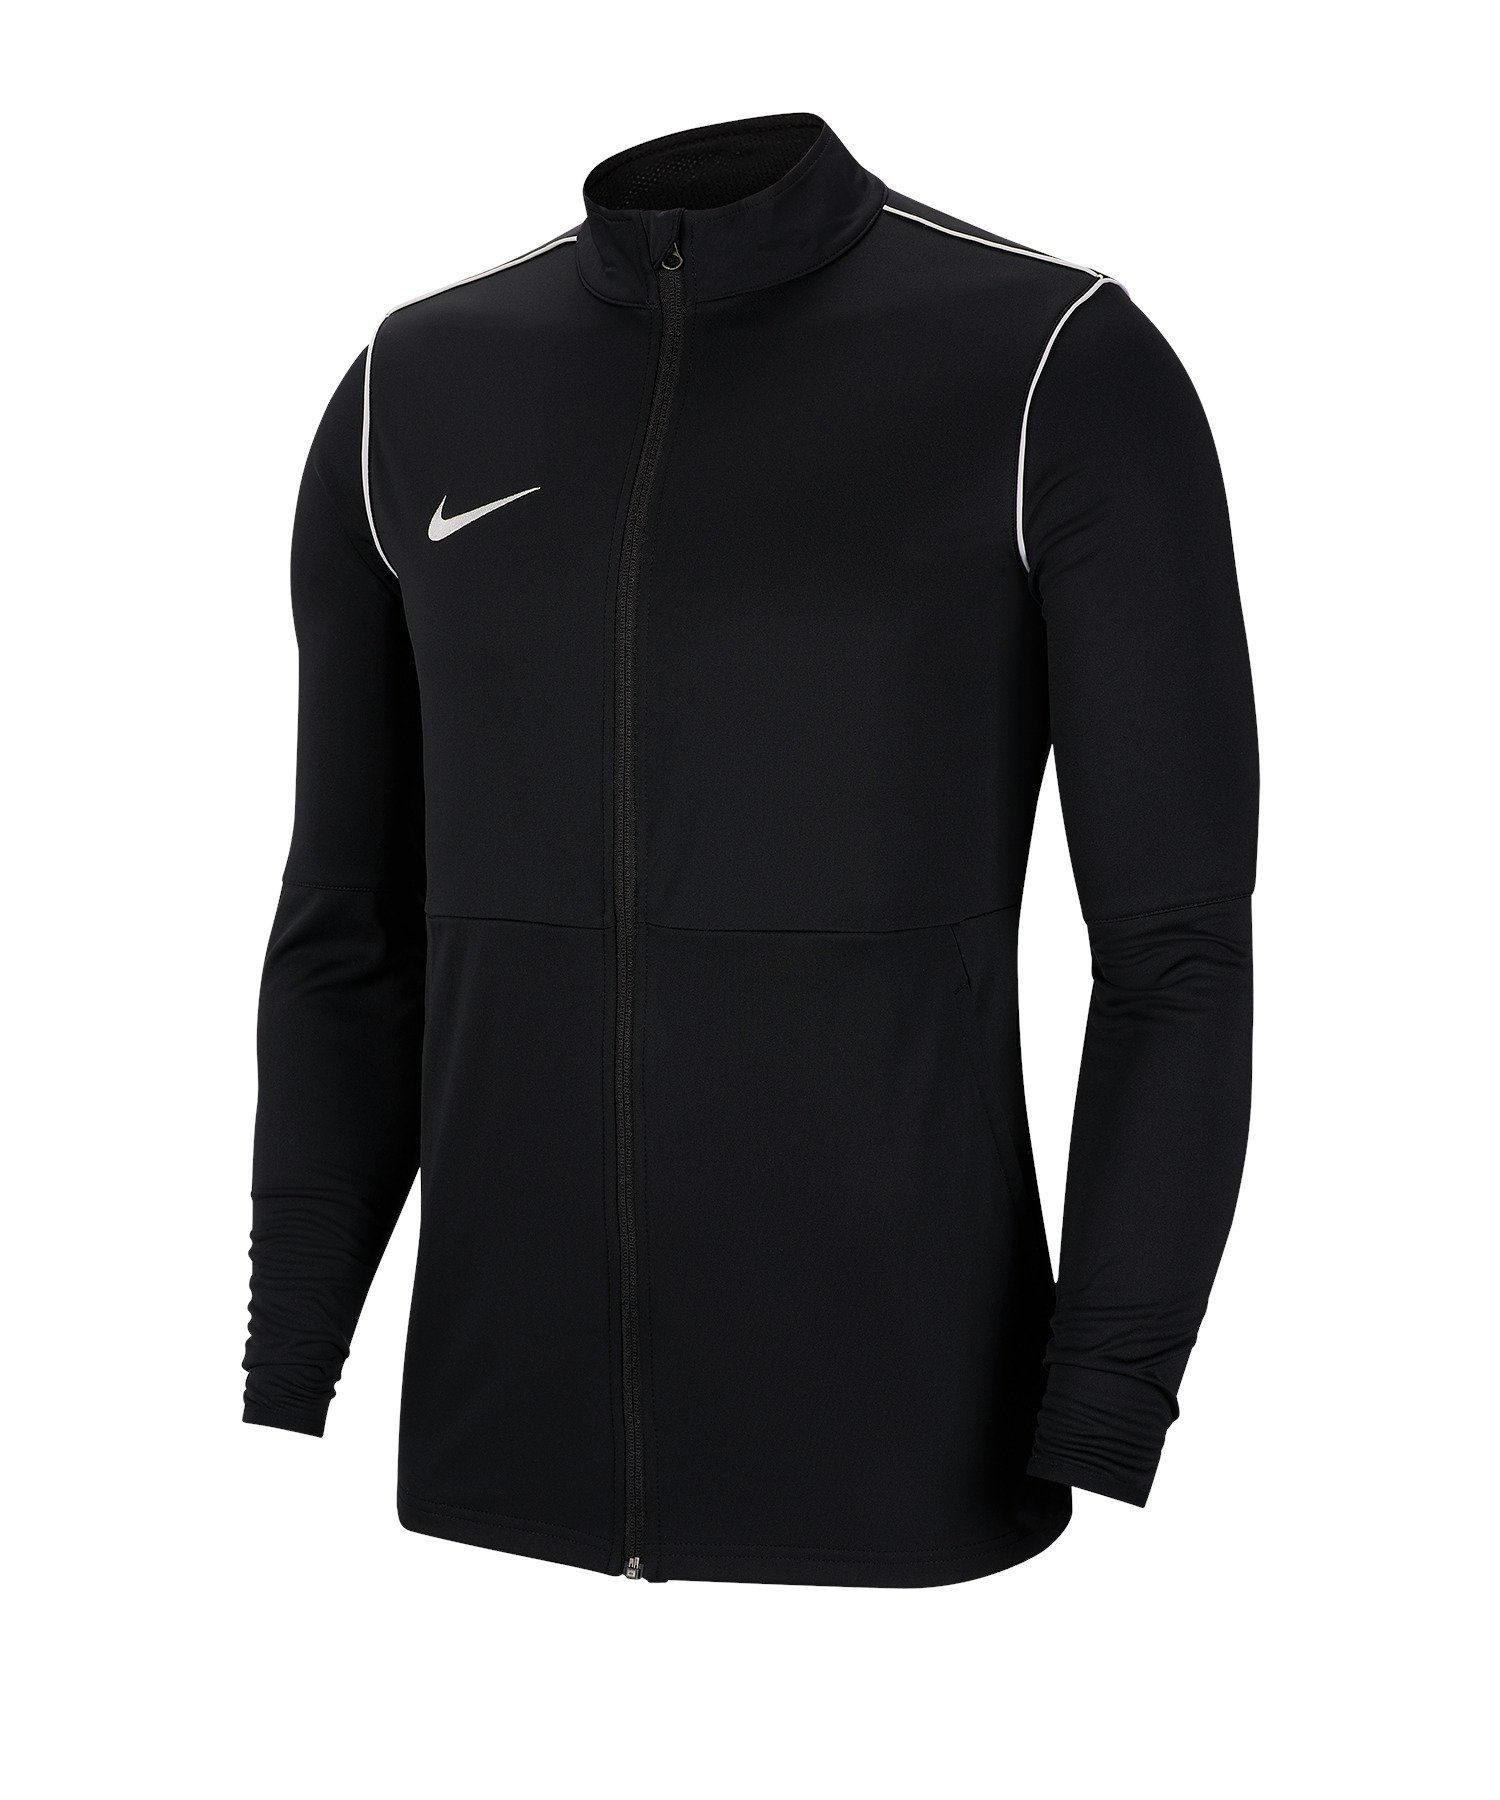 schwarz Nike Park 20 Sweatjacke Training Jacke